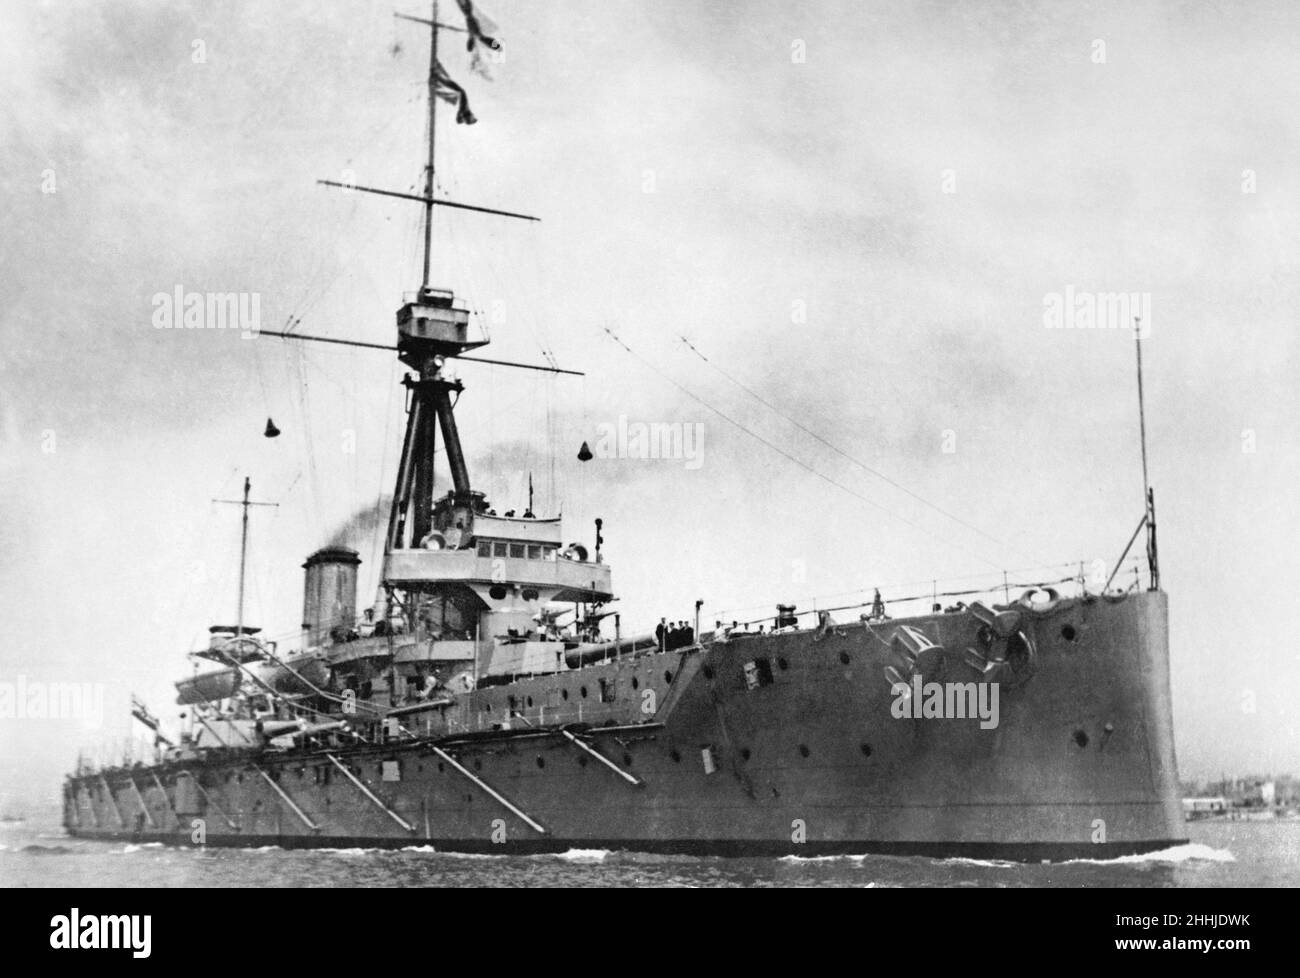 HMS Dreadnought, ein 18.110-Tonnen-Schlachtschiff, das in Portsmouth Dockyard, England, gebaut wurde, war ein Schlachtschiff der britischen Royal Navy, das die Marinemacht revolutionierte. Ihr Eintritt in den Dienst im Jahr 1906 stellte einen deutlichen Fortschritt in der Schiffstechnik dar, den ihr Name mit einer ganzen Generation von Schlachtschiffen, den sogenannten "Readnoughts", in Verbindung gebracht wurde. Während des Ersten Weltkriegs diente die HMS Dreadnought mit dem Kampfgeschwader von 4th in der Nordsee. Am 18. März 1915 rammte und sank sie auf Patrouille die U-29. Ab Mai 1916 war Dreadnought das Flaggschiff der Battle Squadron von 3rd Stockfoto